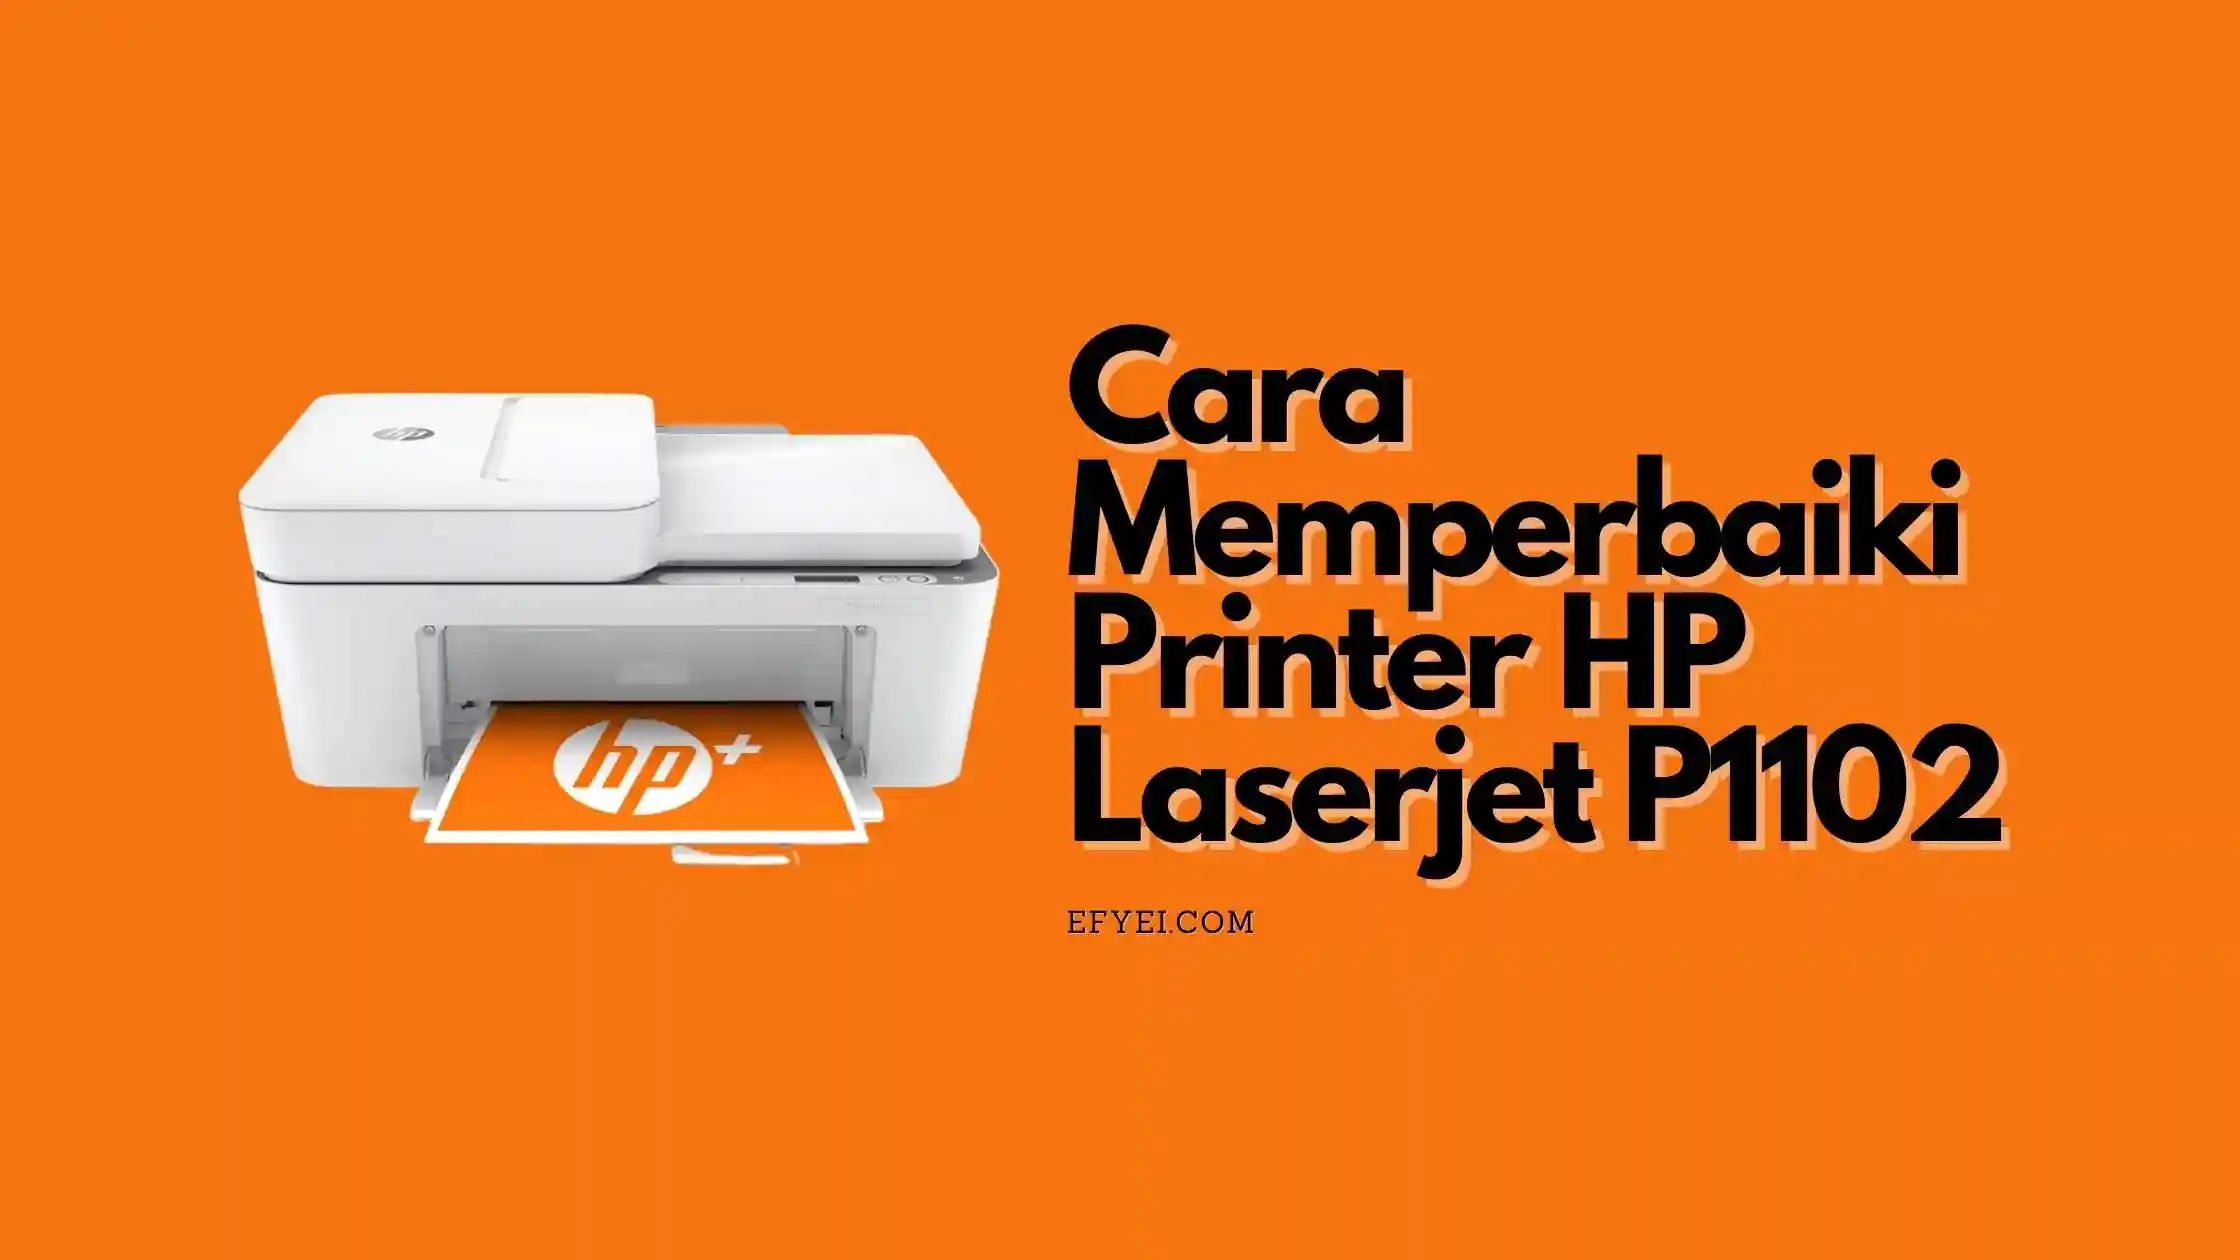 Cara memperbaiki printer HP laserjet P1102